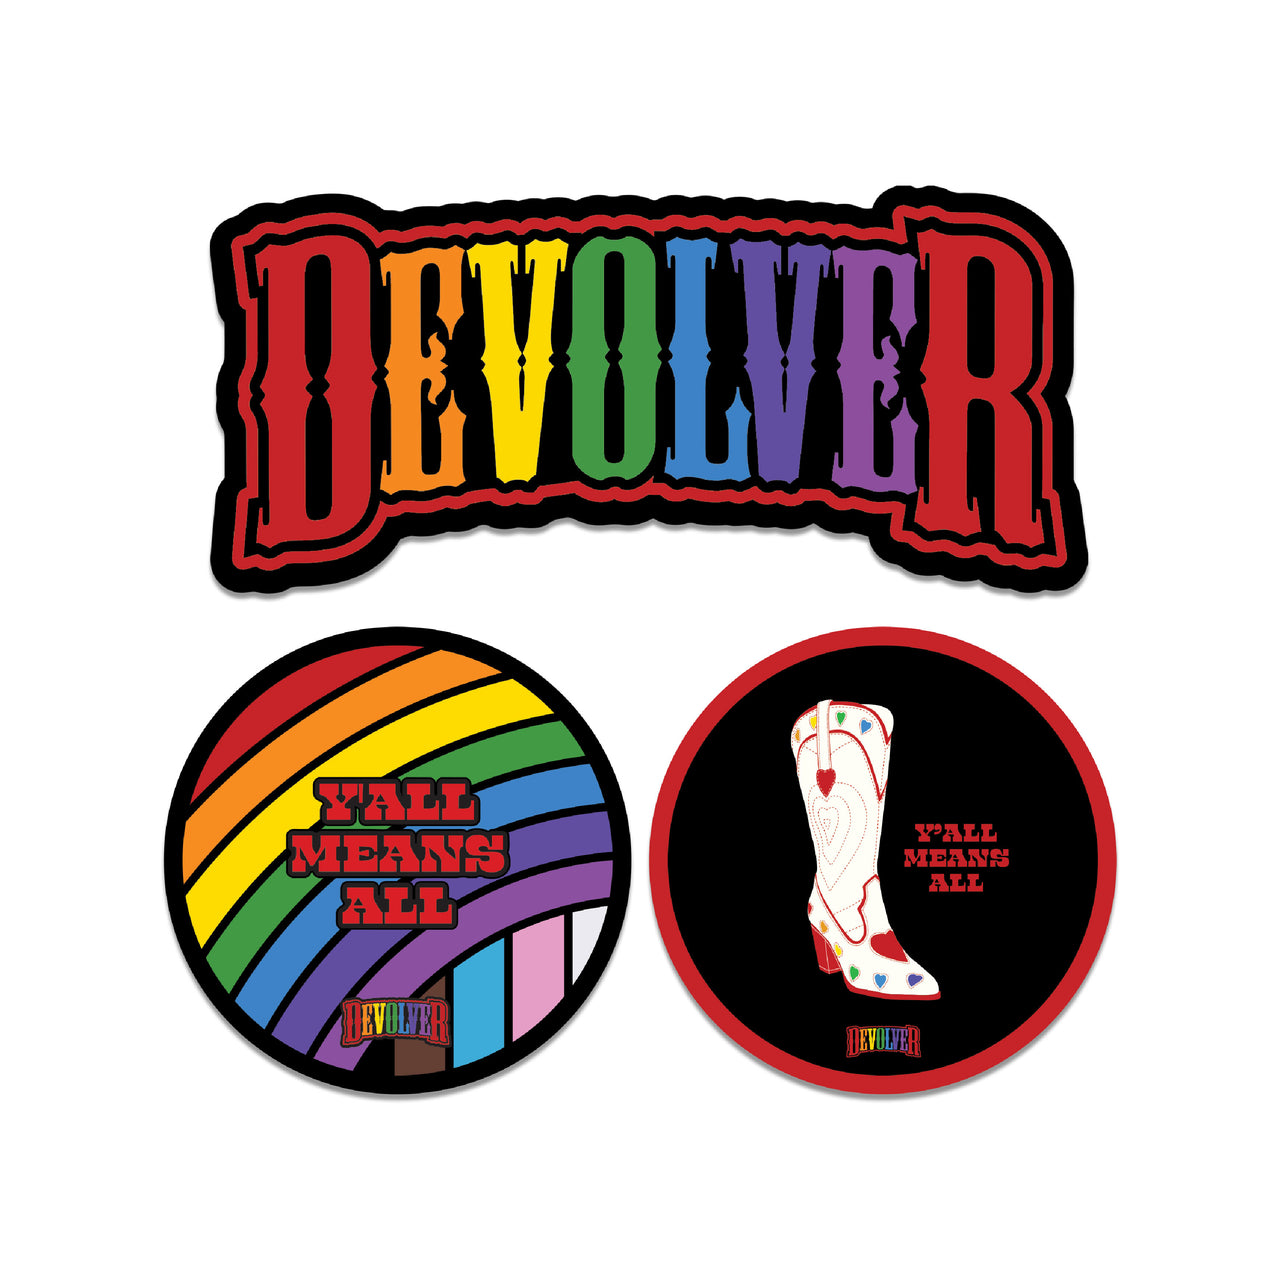 Devolver Y'all Sticker Pack